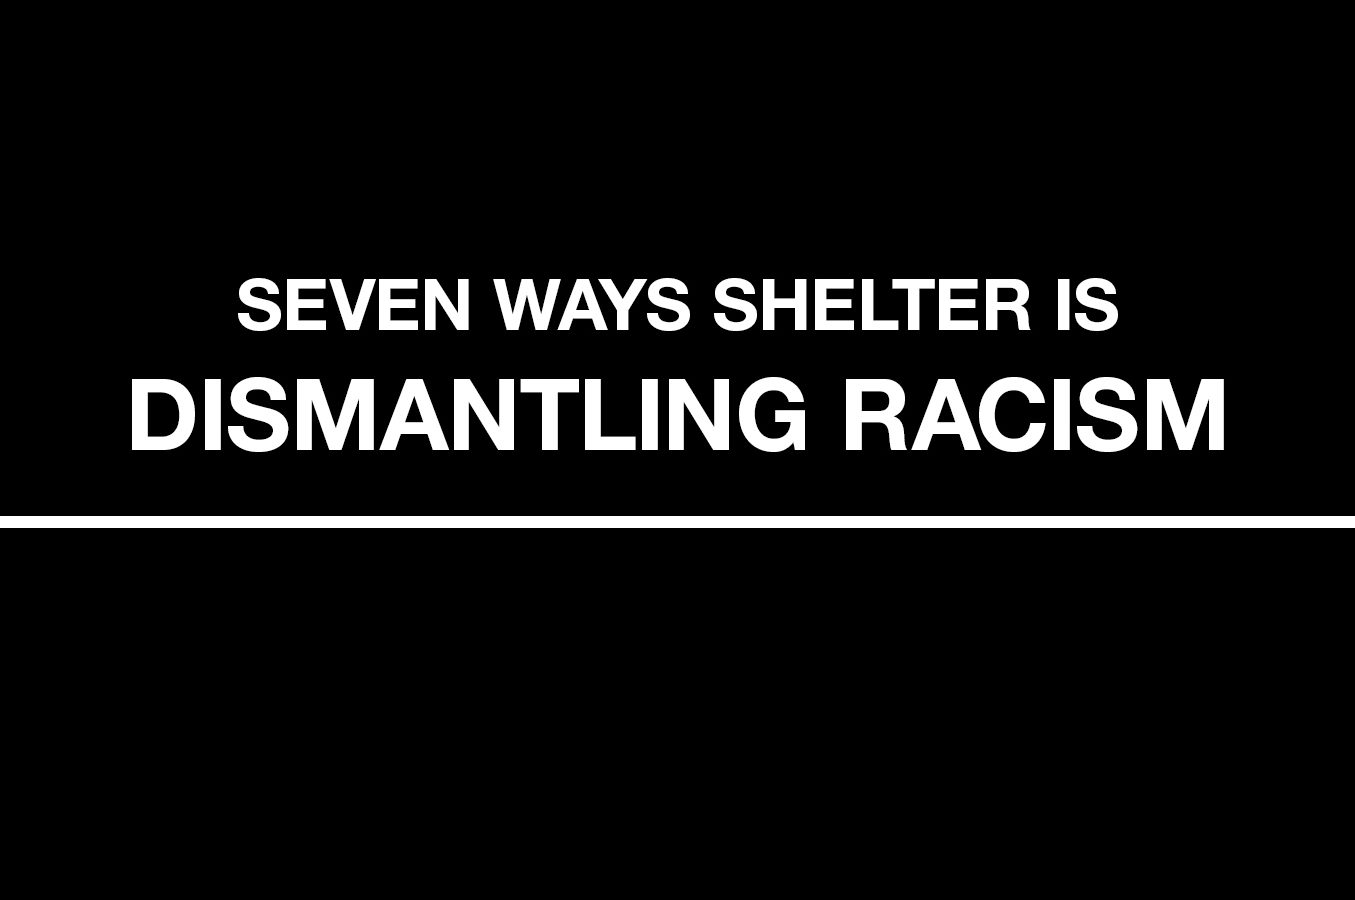 Seven Ways Shelter is Dismantling Racism